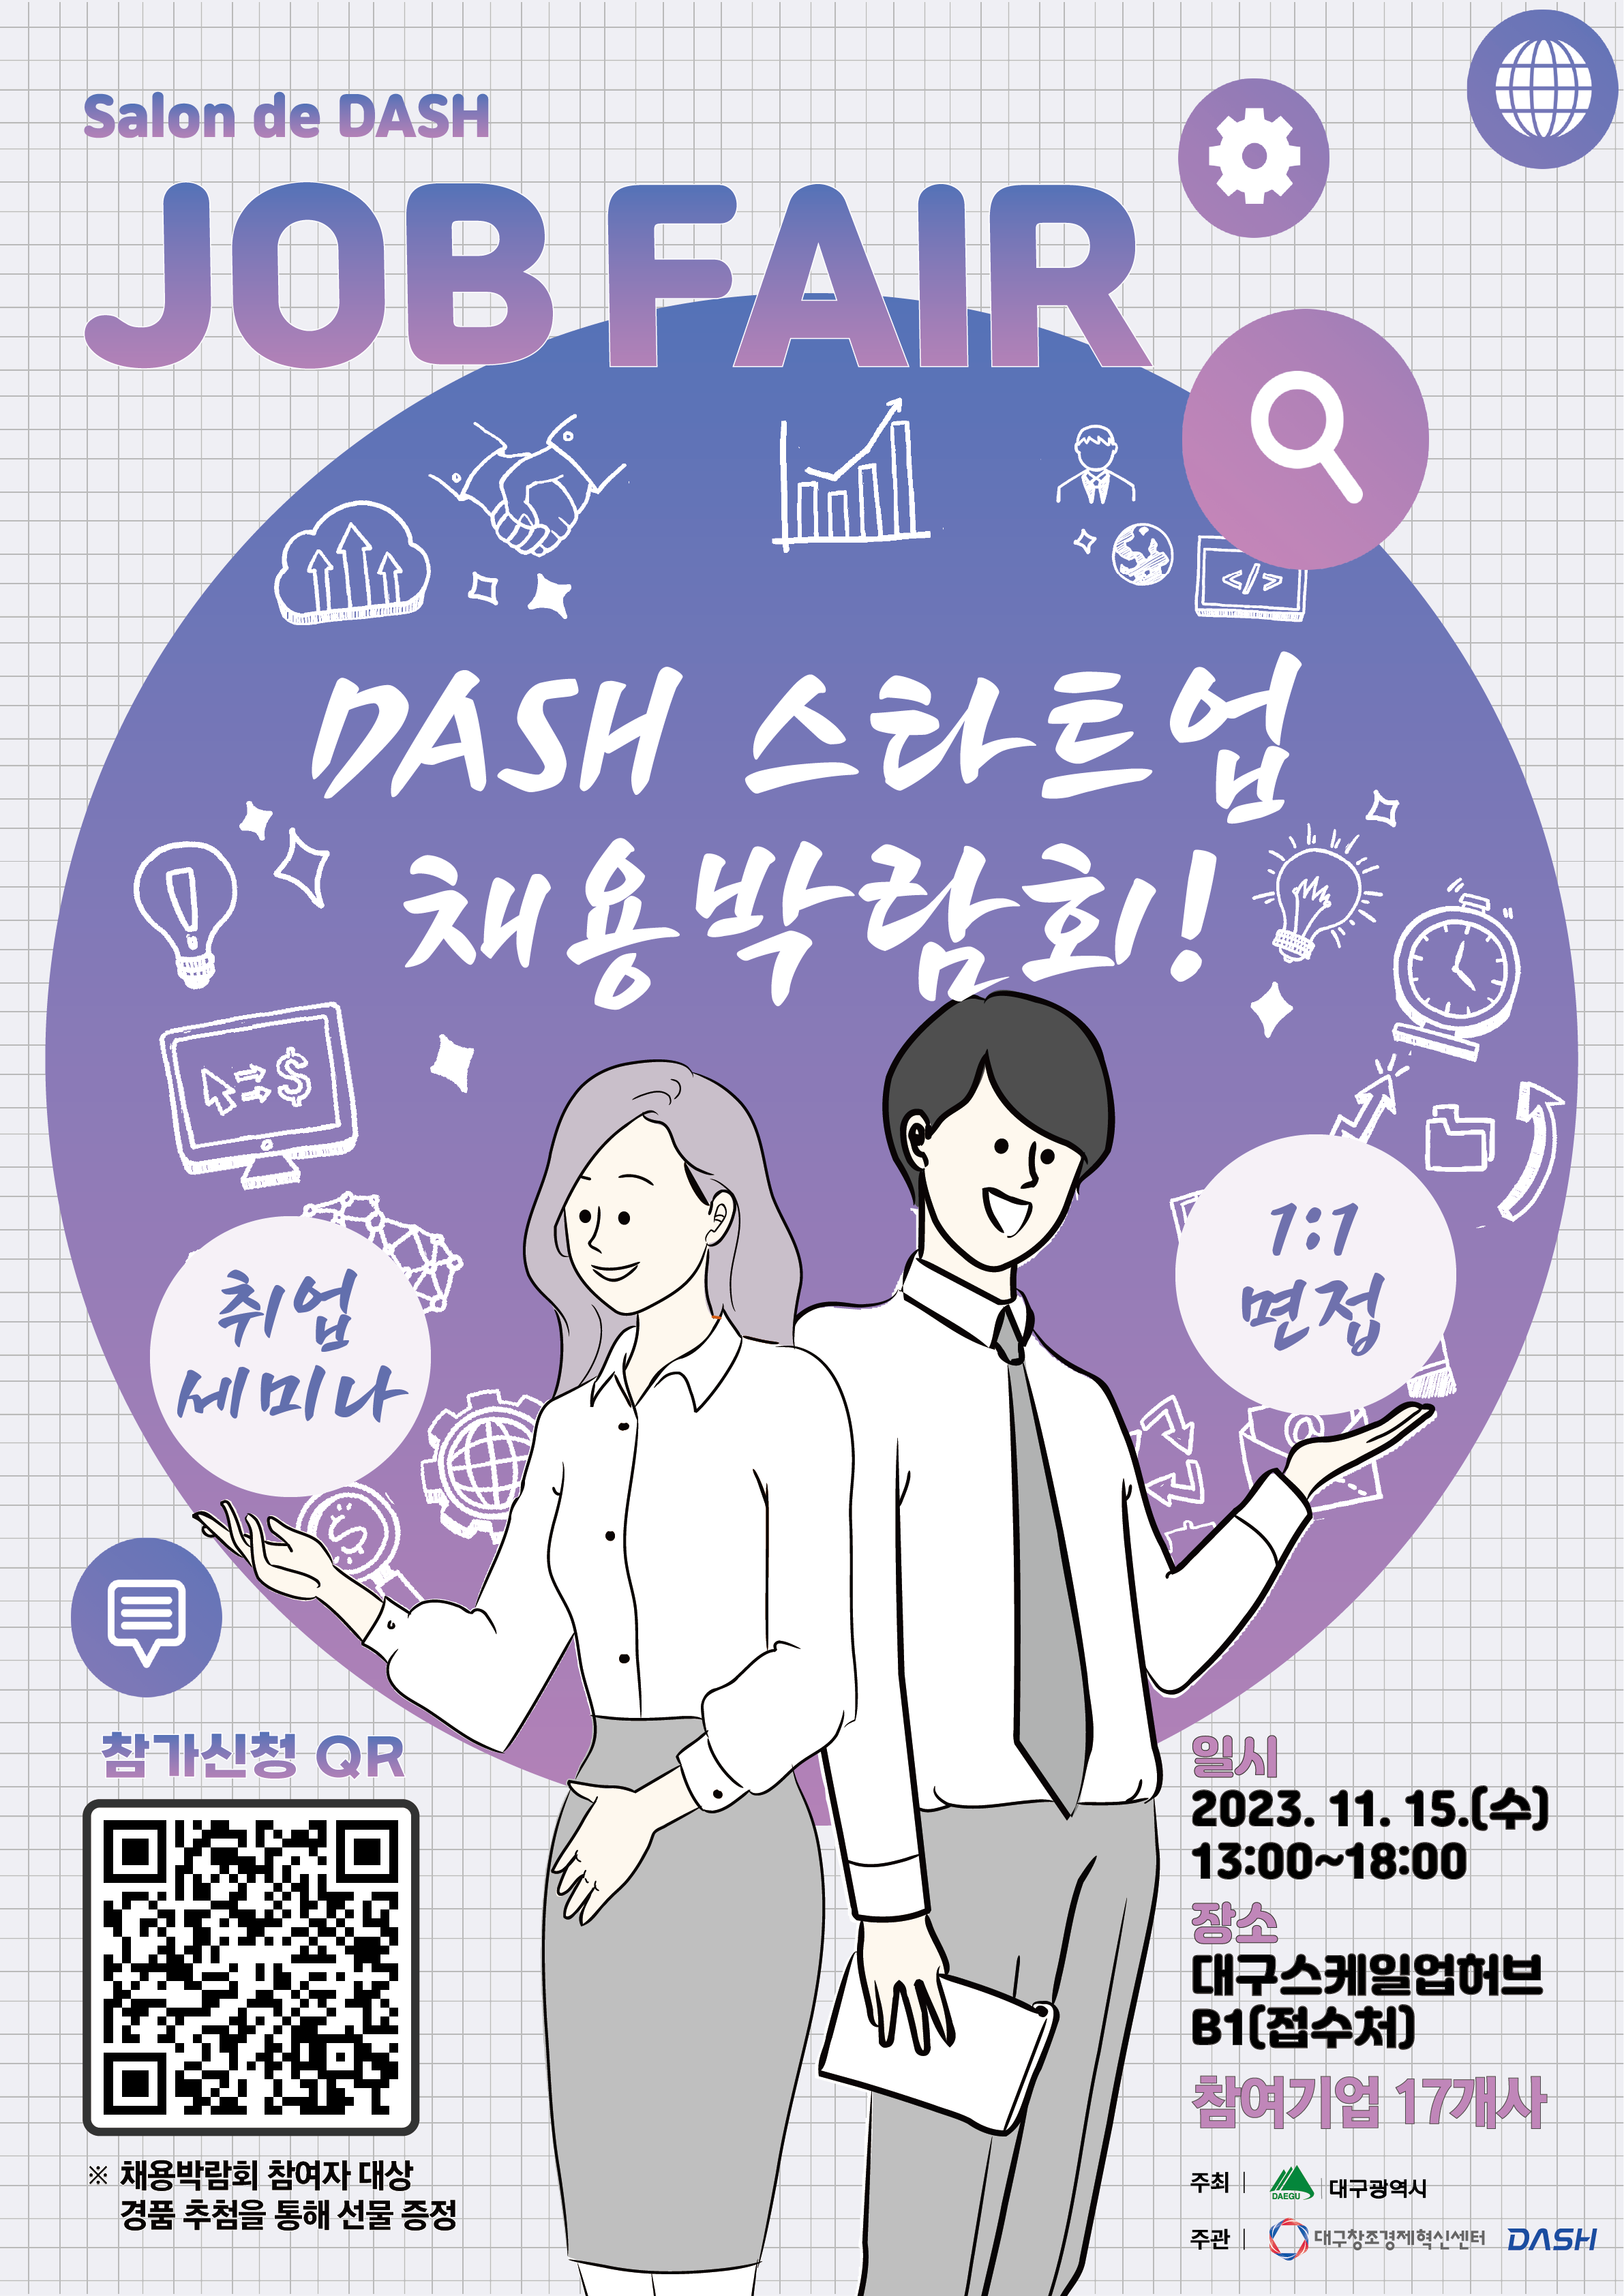 [채용박람회] 2023년 DASH 스타트업 채용박람회